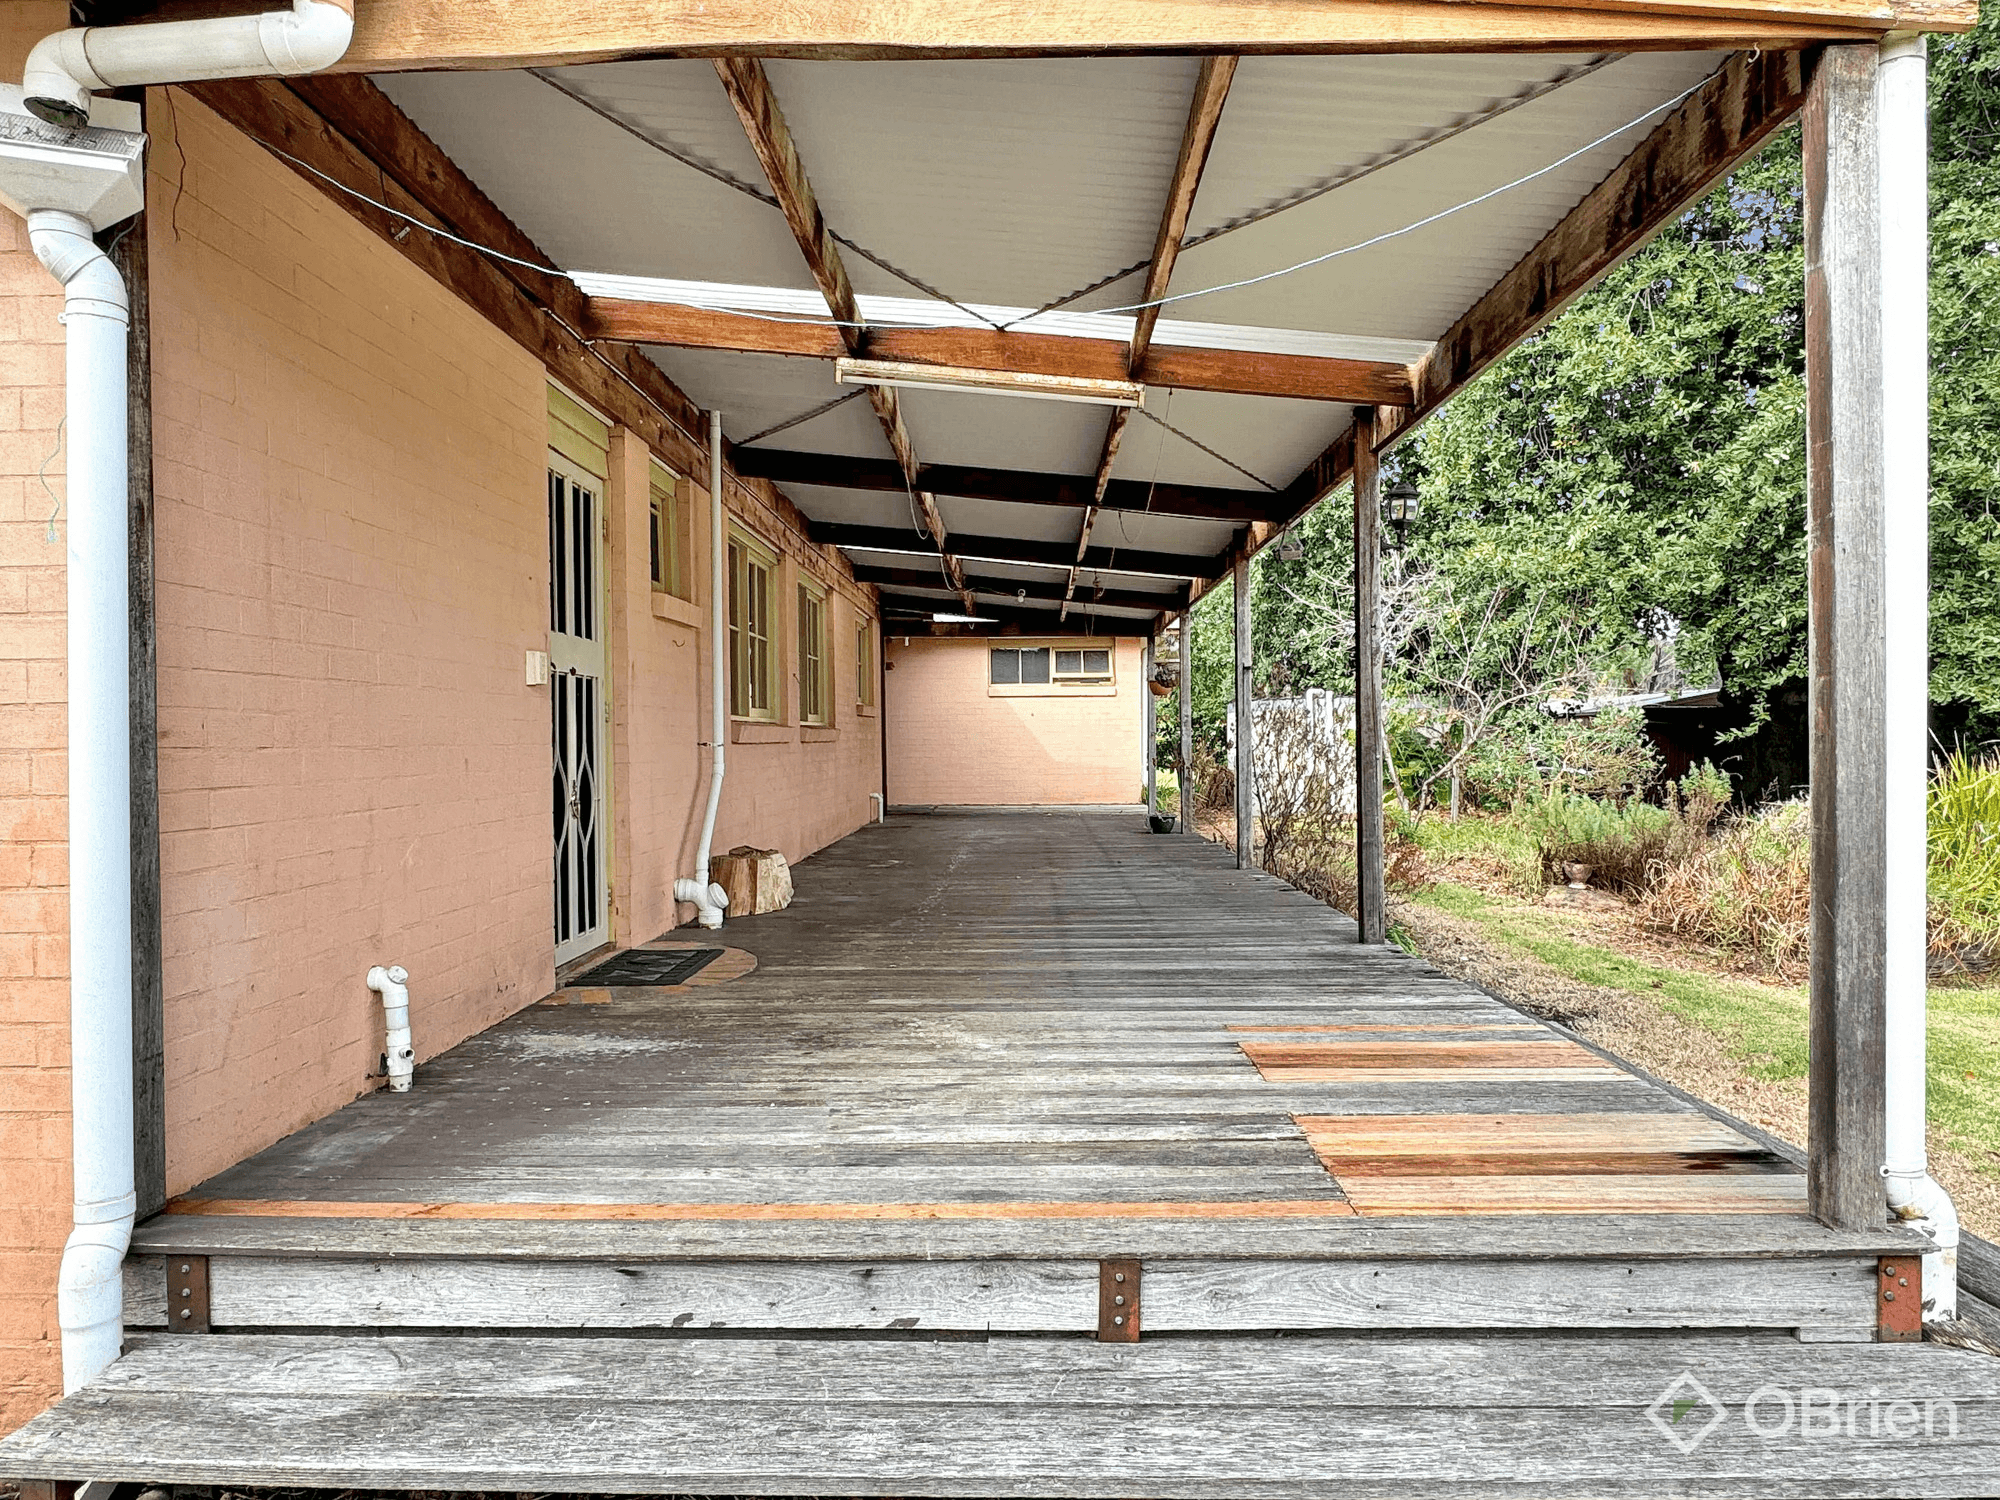 267 Wairewa Road, Wairewa, VIC 3887